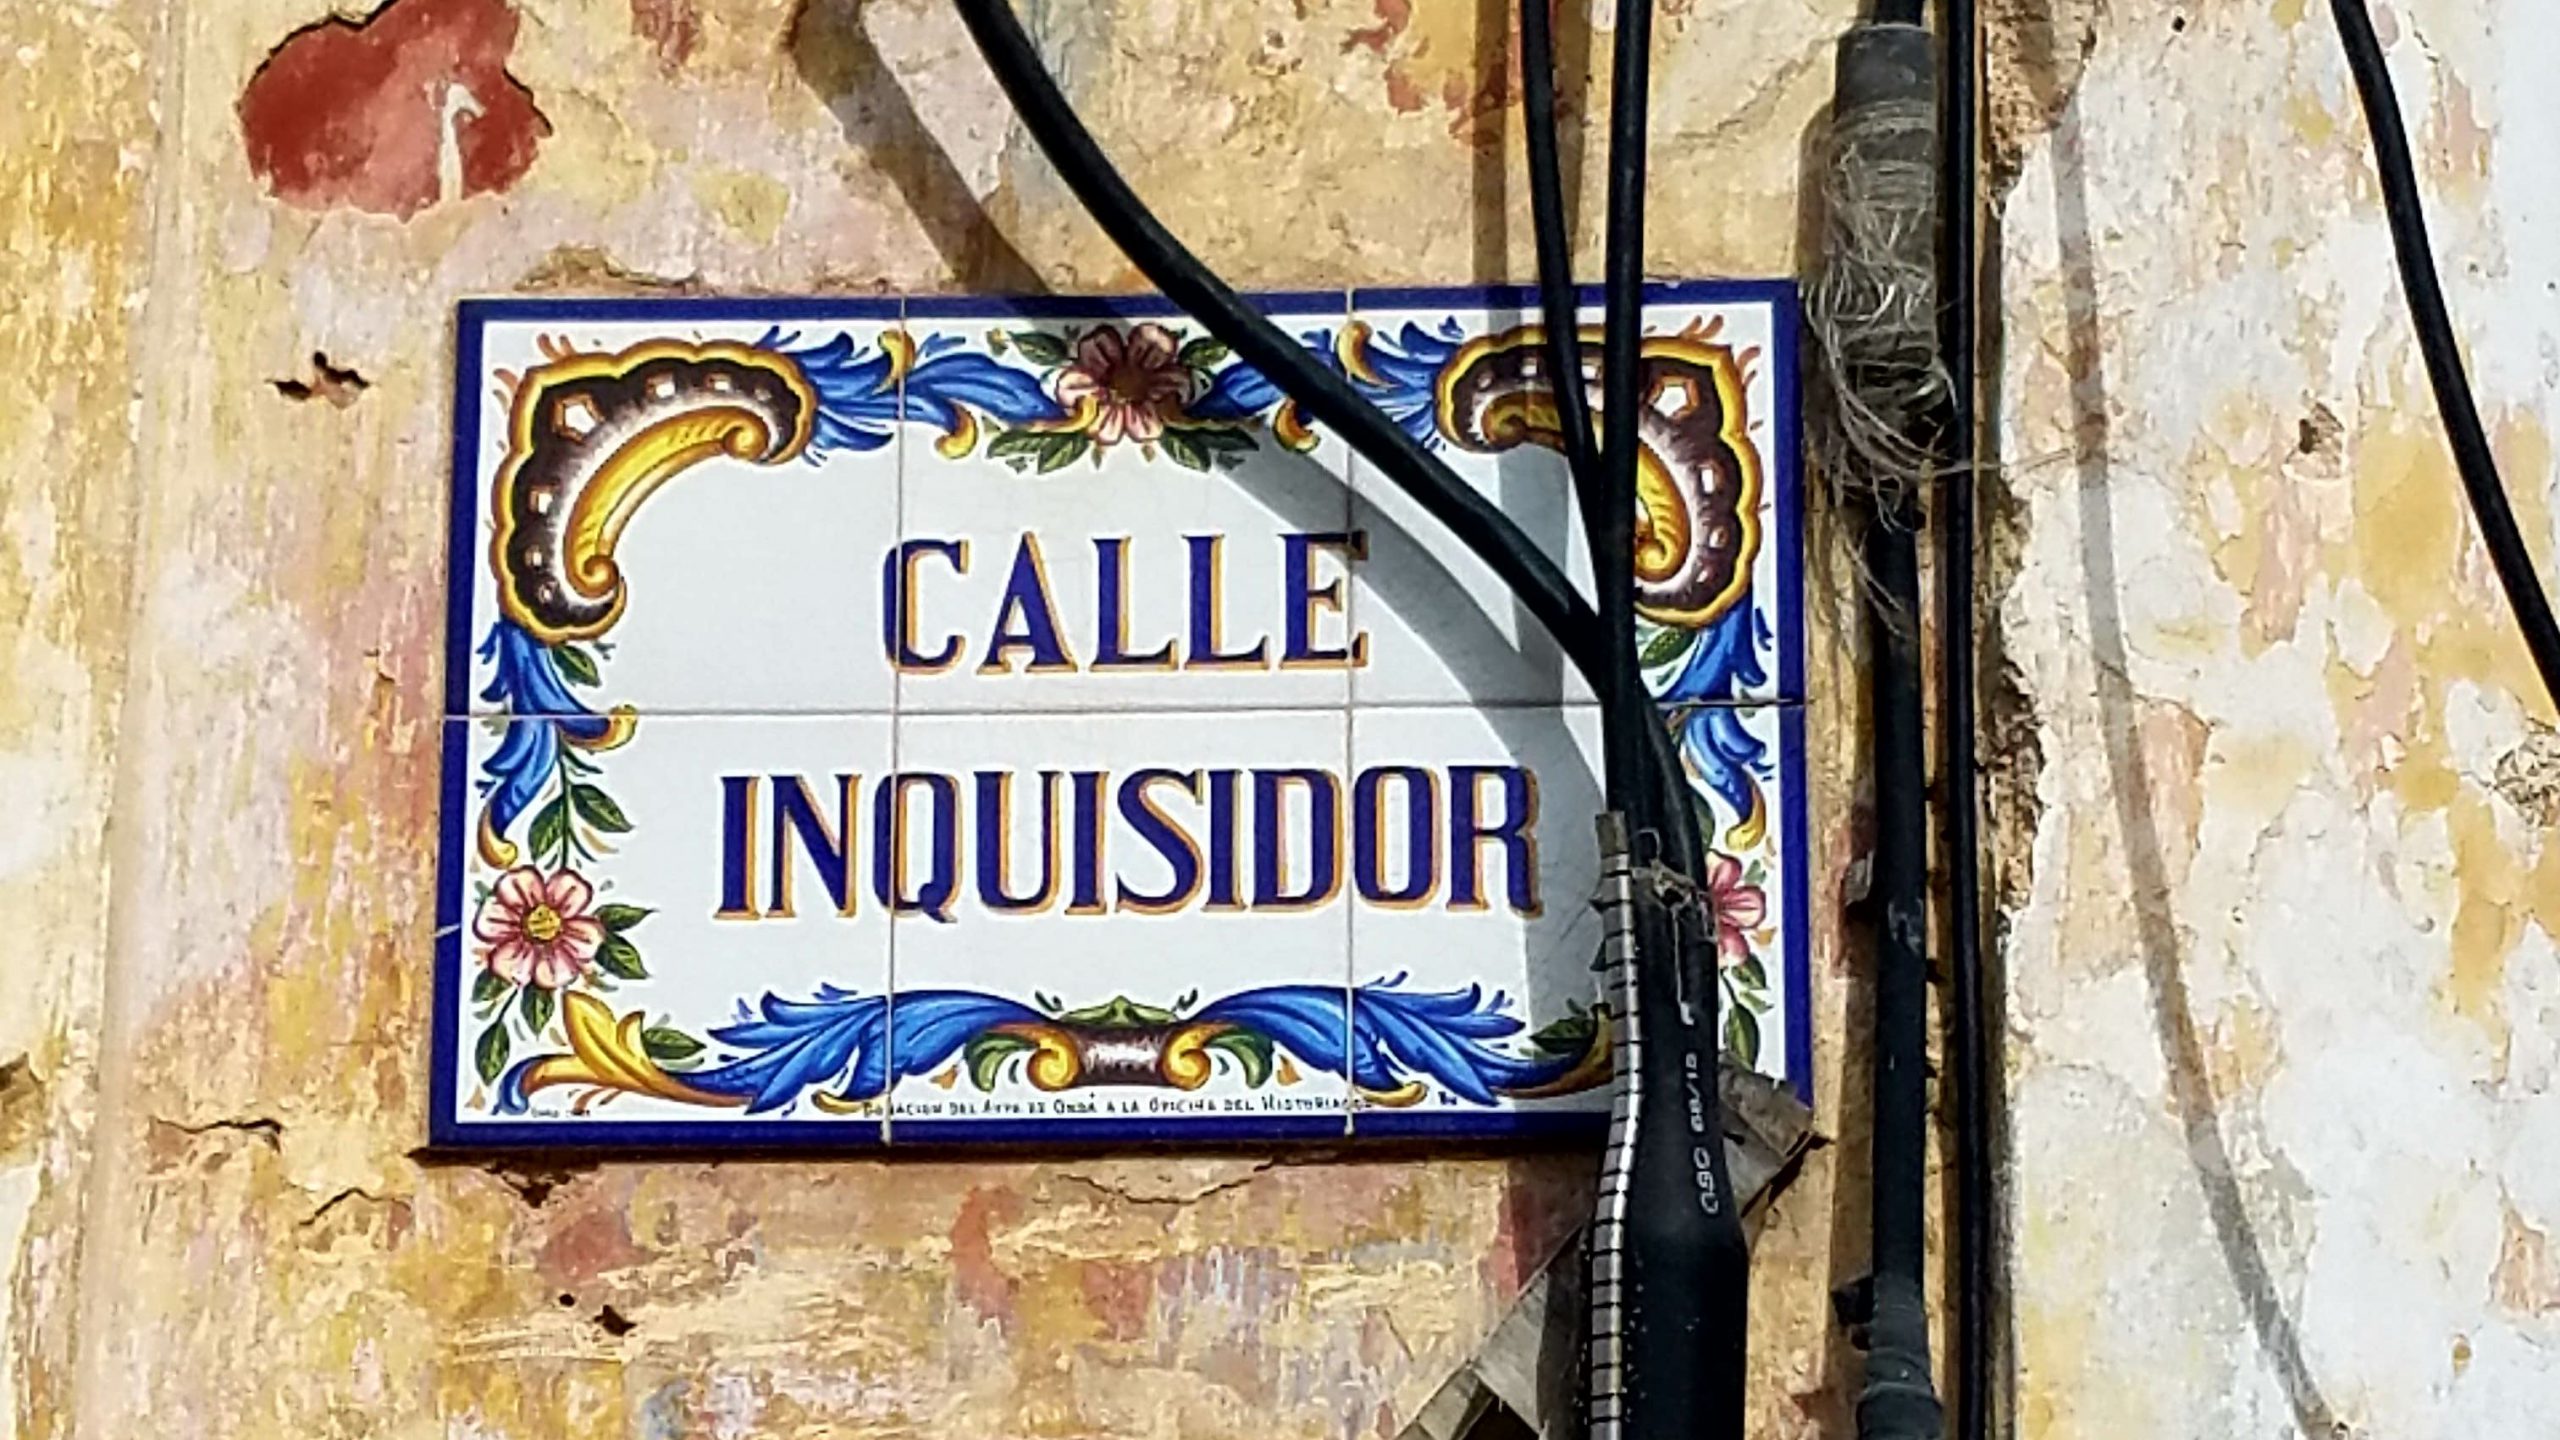 Calle Inquisador